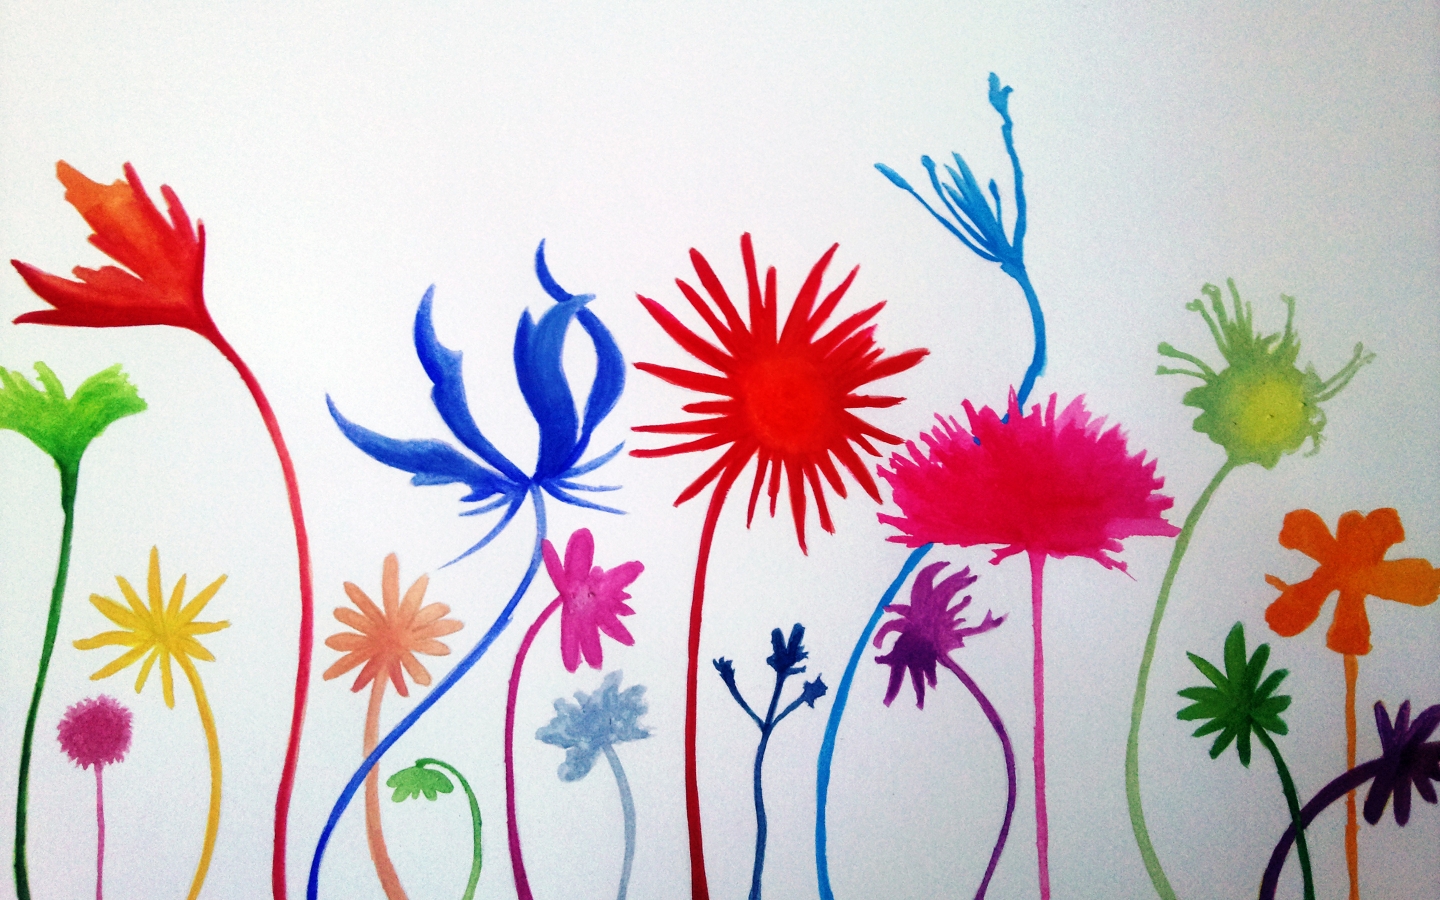 Flower Mural for 1440 x 900 widescreen resolution